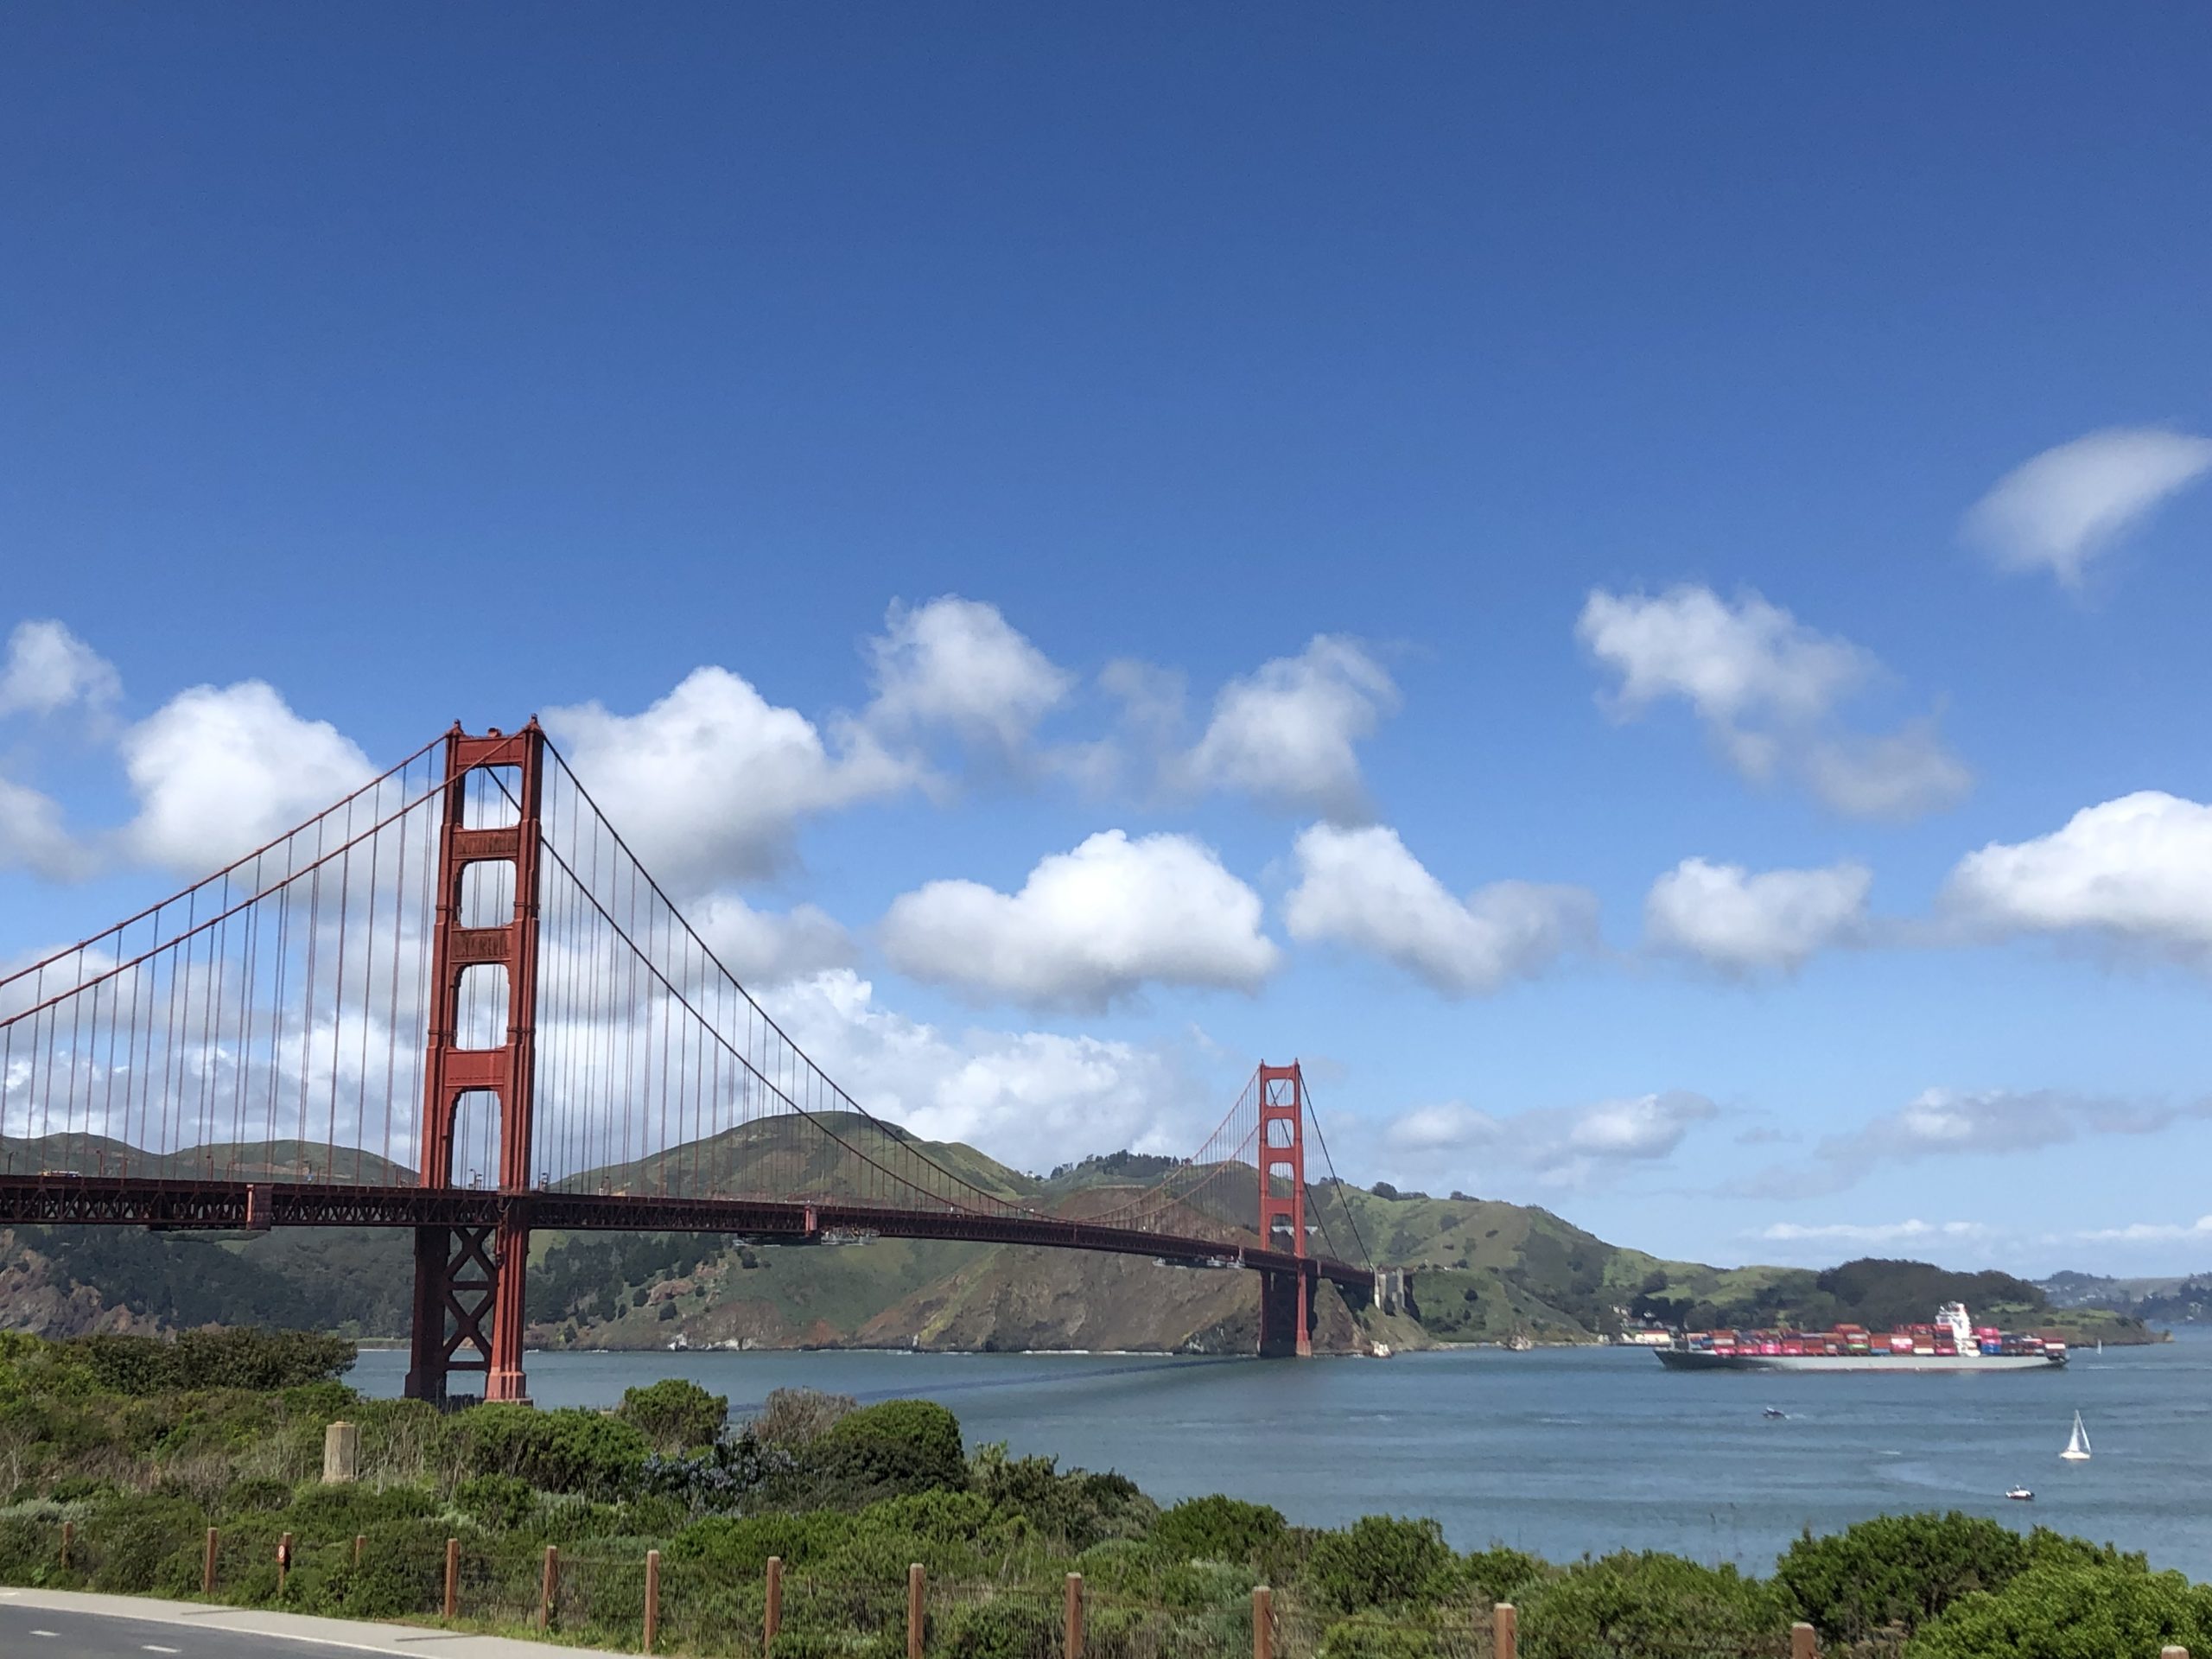 Von Waldhäusern und Teslas im Hippiedesign – Über die Golden Gate Bridge nach Mill Valley.